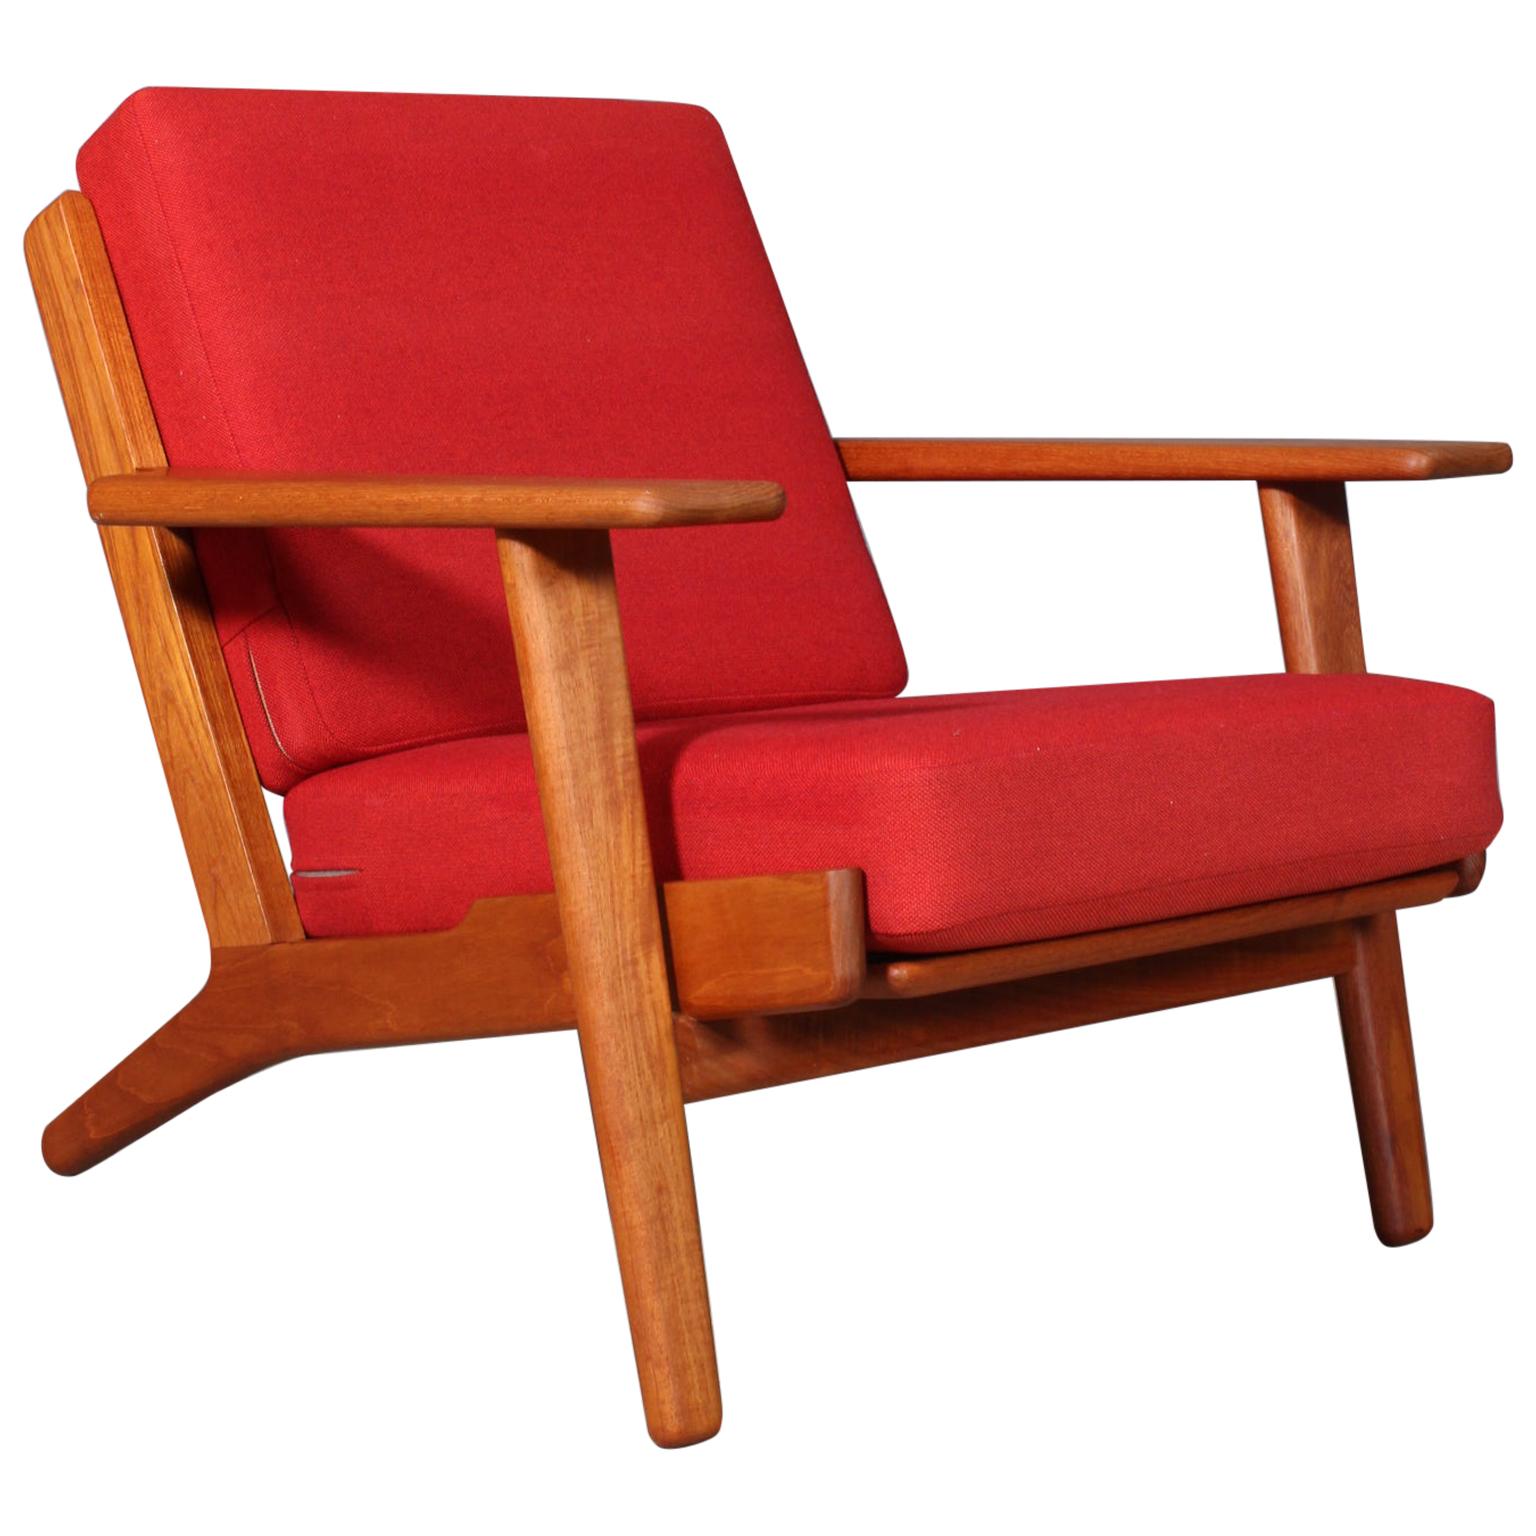 Hans J. Wegner, Lounge Chair, Model 290, Teak